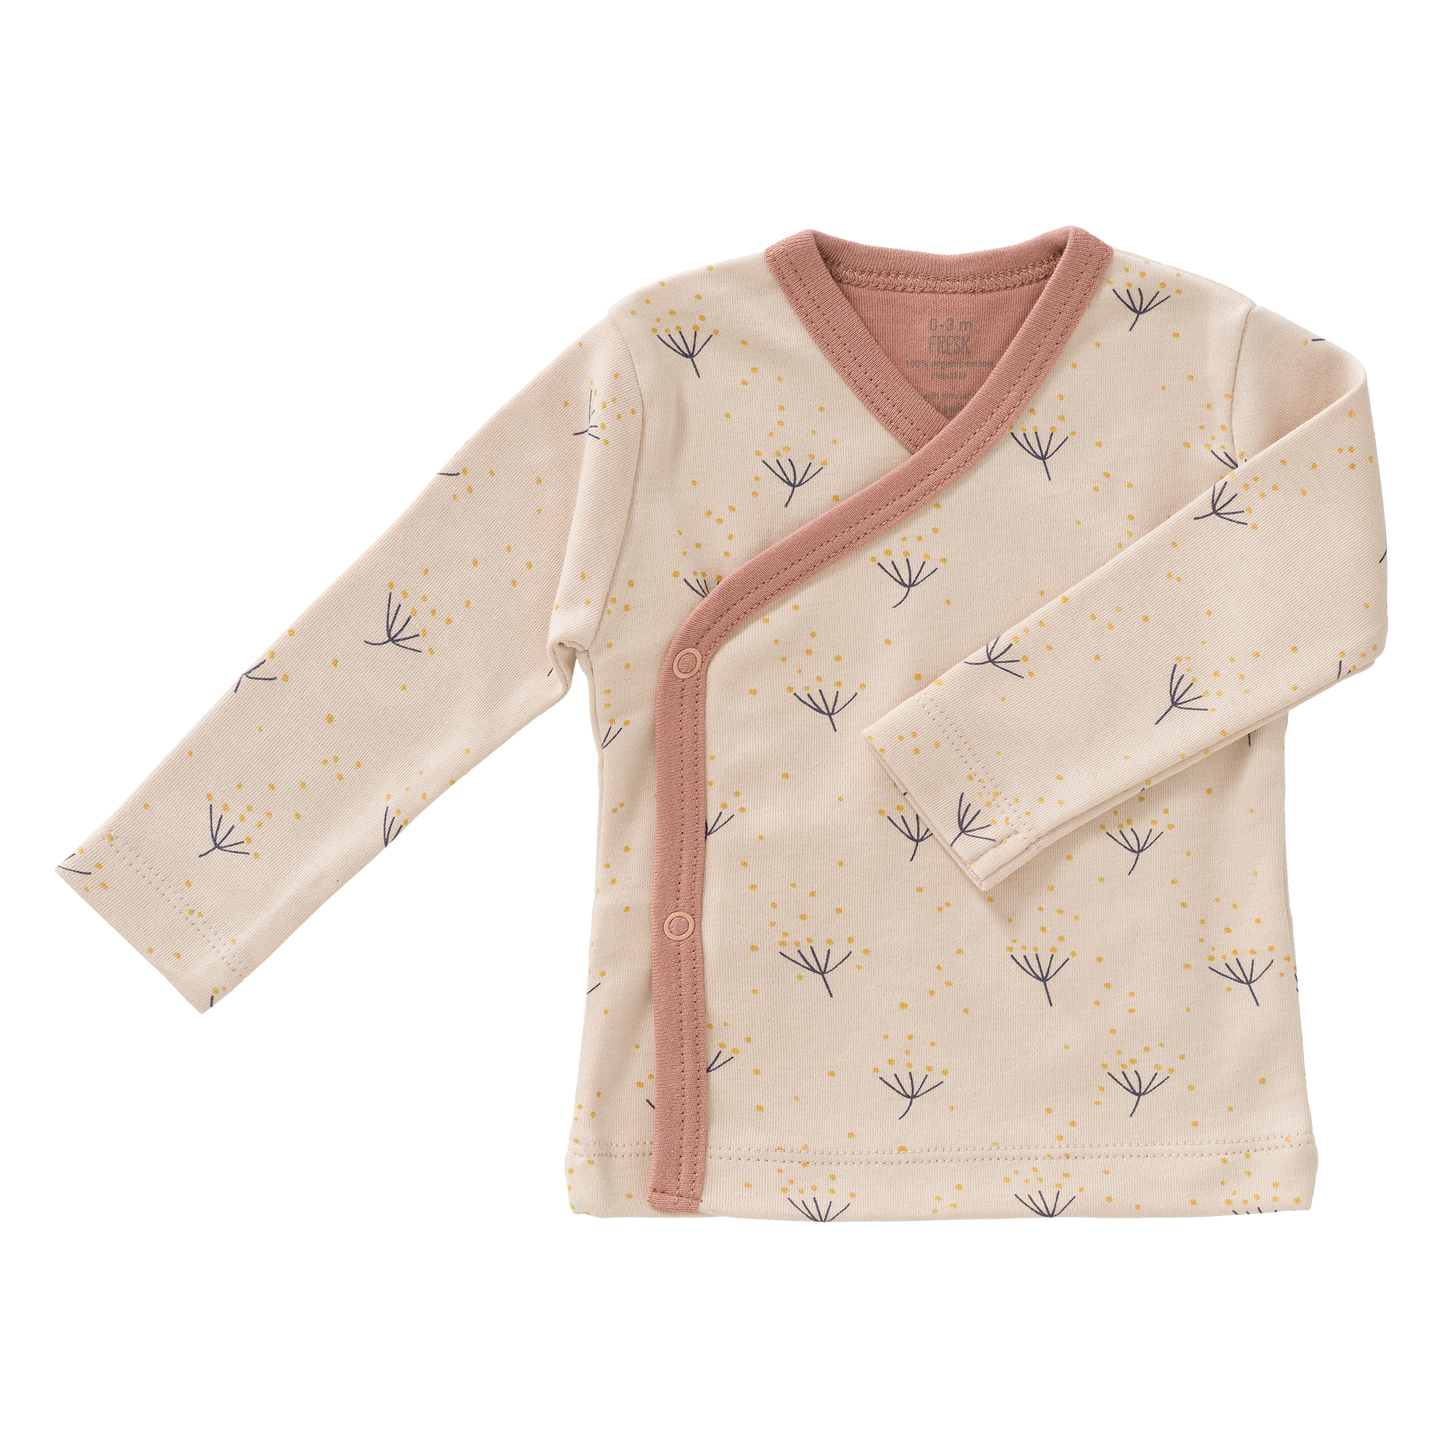 Süßes Wickelshirt aus Biobaumwolle in rosa mit Pusteblumen darauf